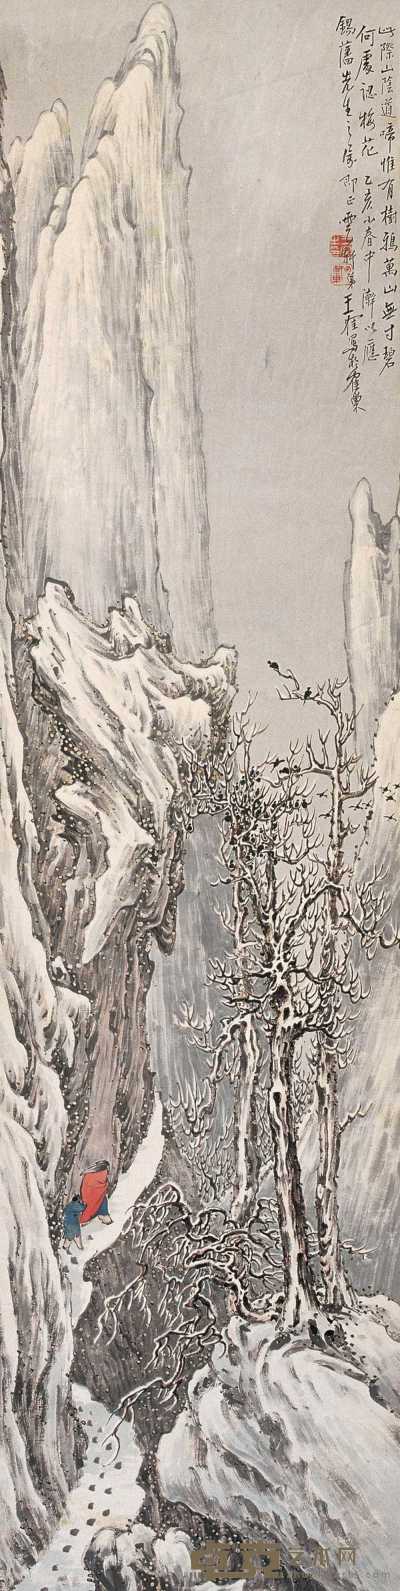 王云轩 1935年作 踏雪寻梅图 立轴 134.5×33.5cm